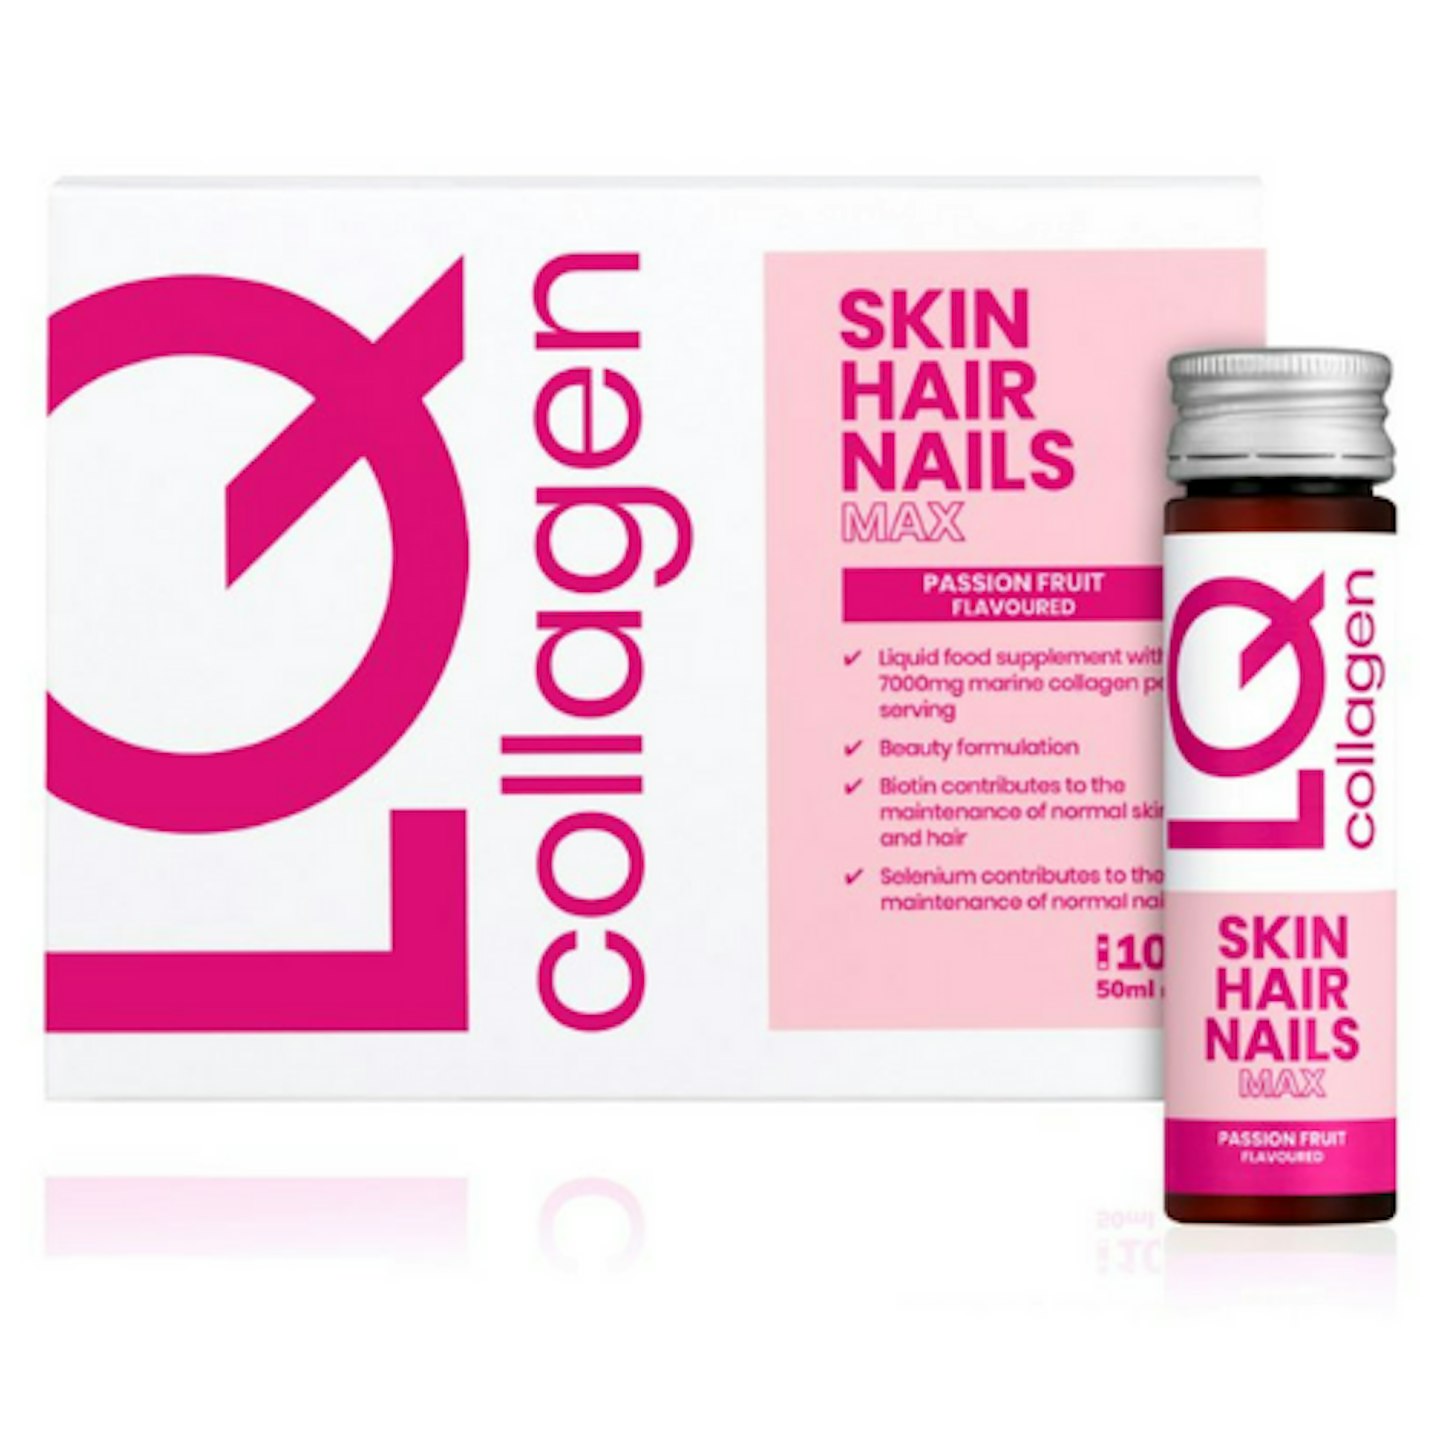 LQ Collagen Skin Hair Nails Max